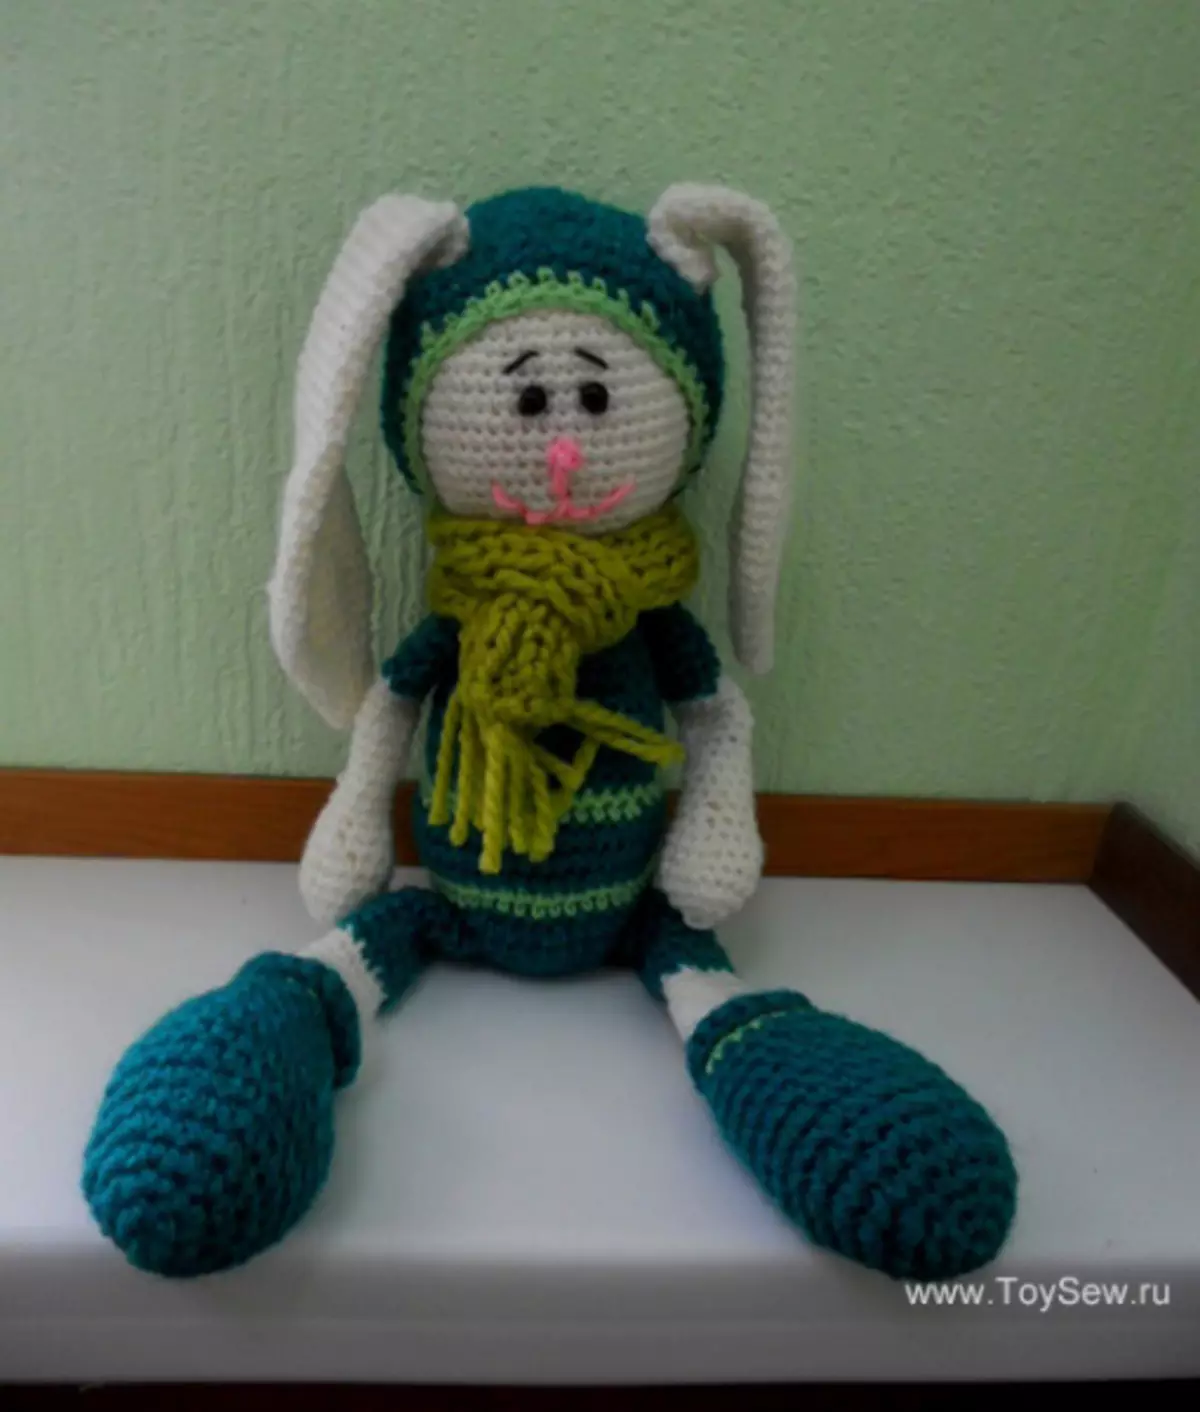 Amigurum Crochet Bunny: სქემები აღწერა და ვიდეო